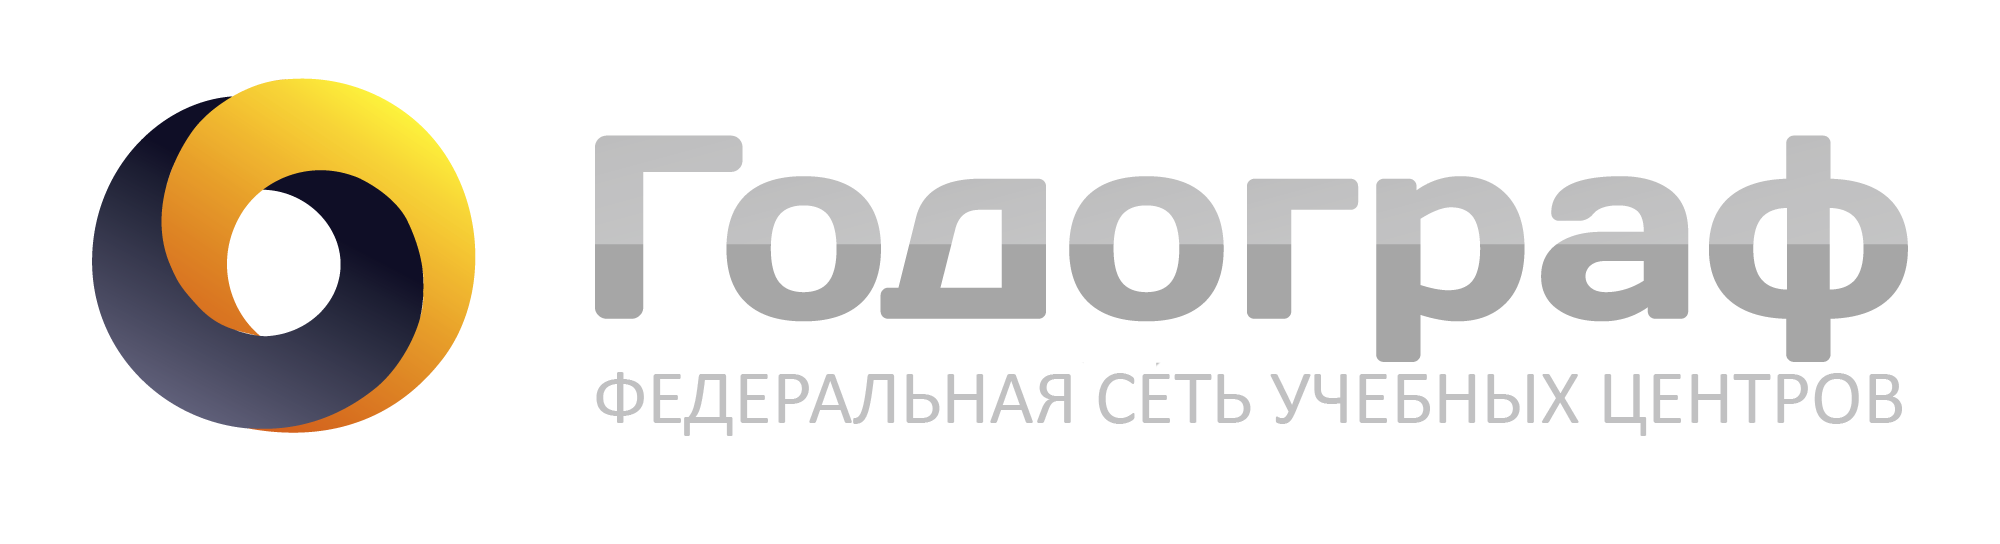 Логотип Учебный центр Годограф